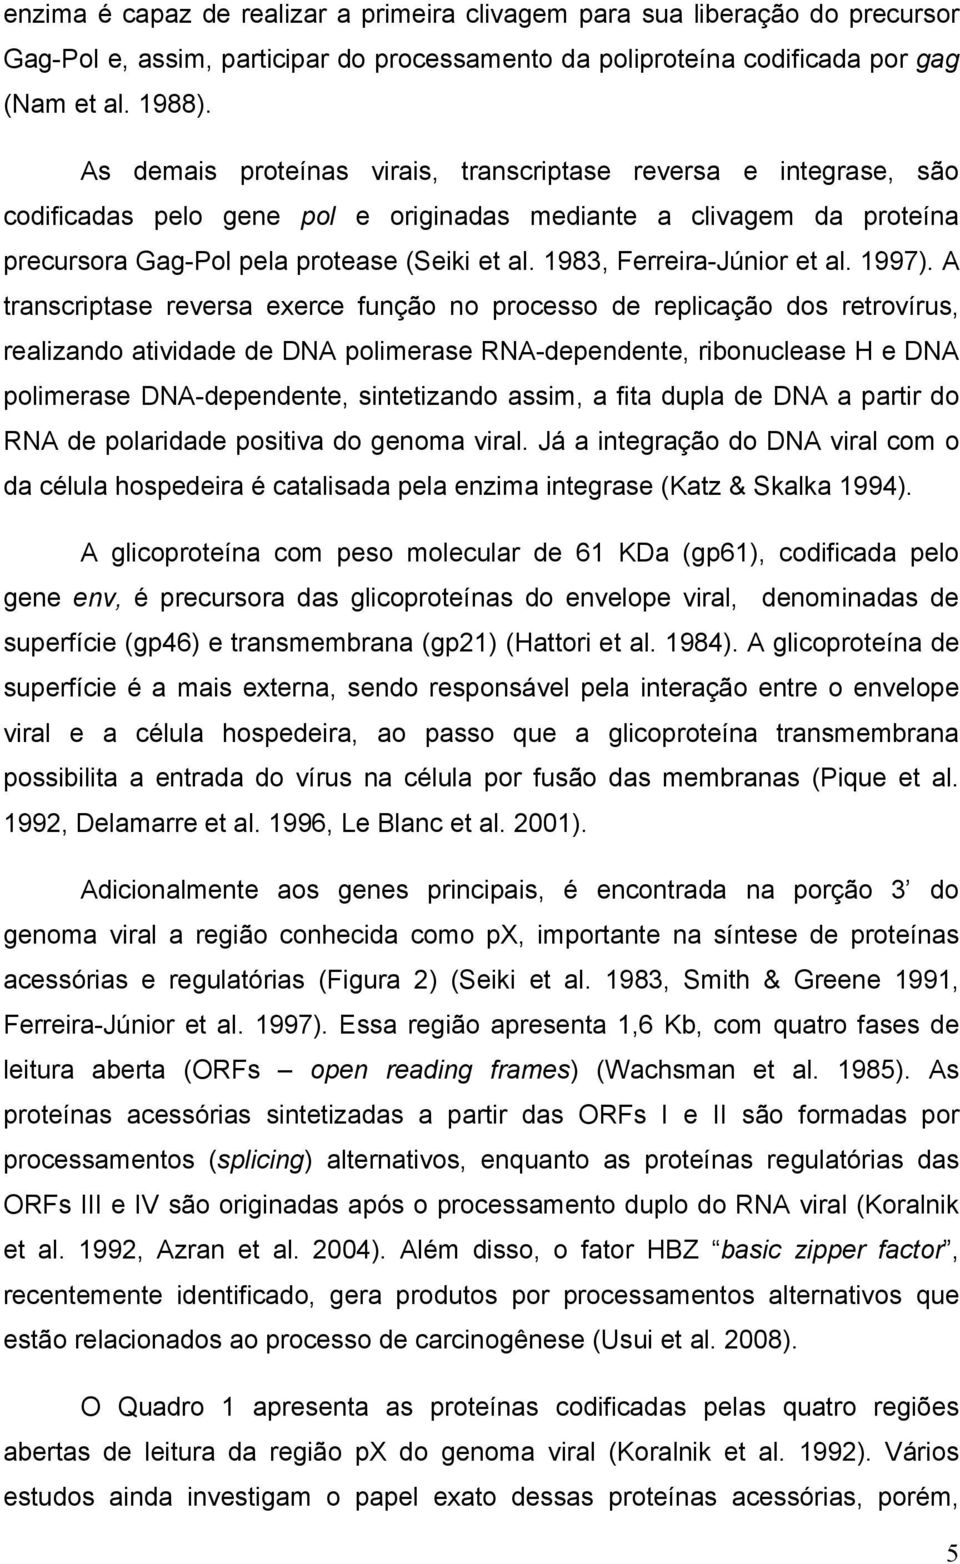 1983, Ferreira-Júnior et al. 1997).